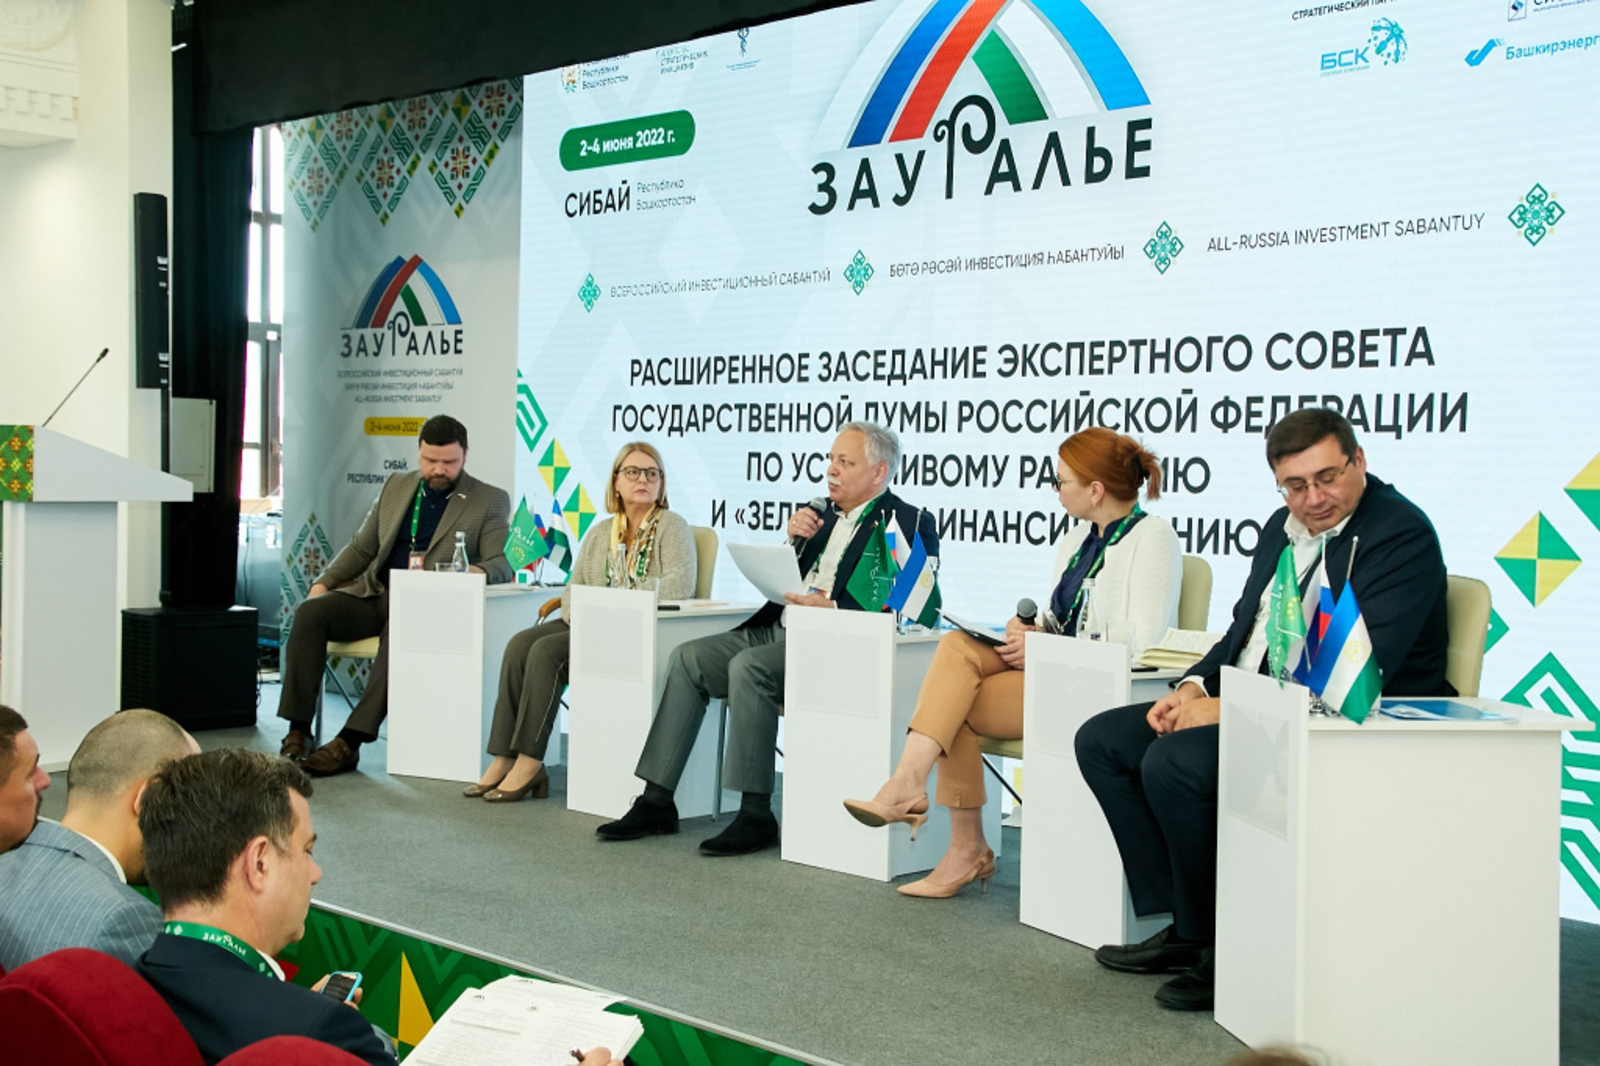 Инвестсабантуй «Зауралье – 2022» стал площадкой проведения расширенного заседания экспертного совета Государственной Думы РФ по устойчивому развитию и «зеленому» финансированию